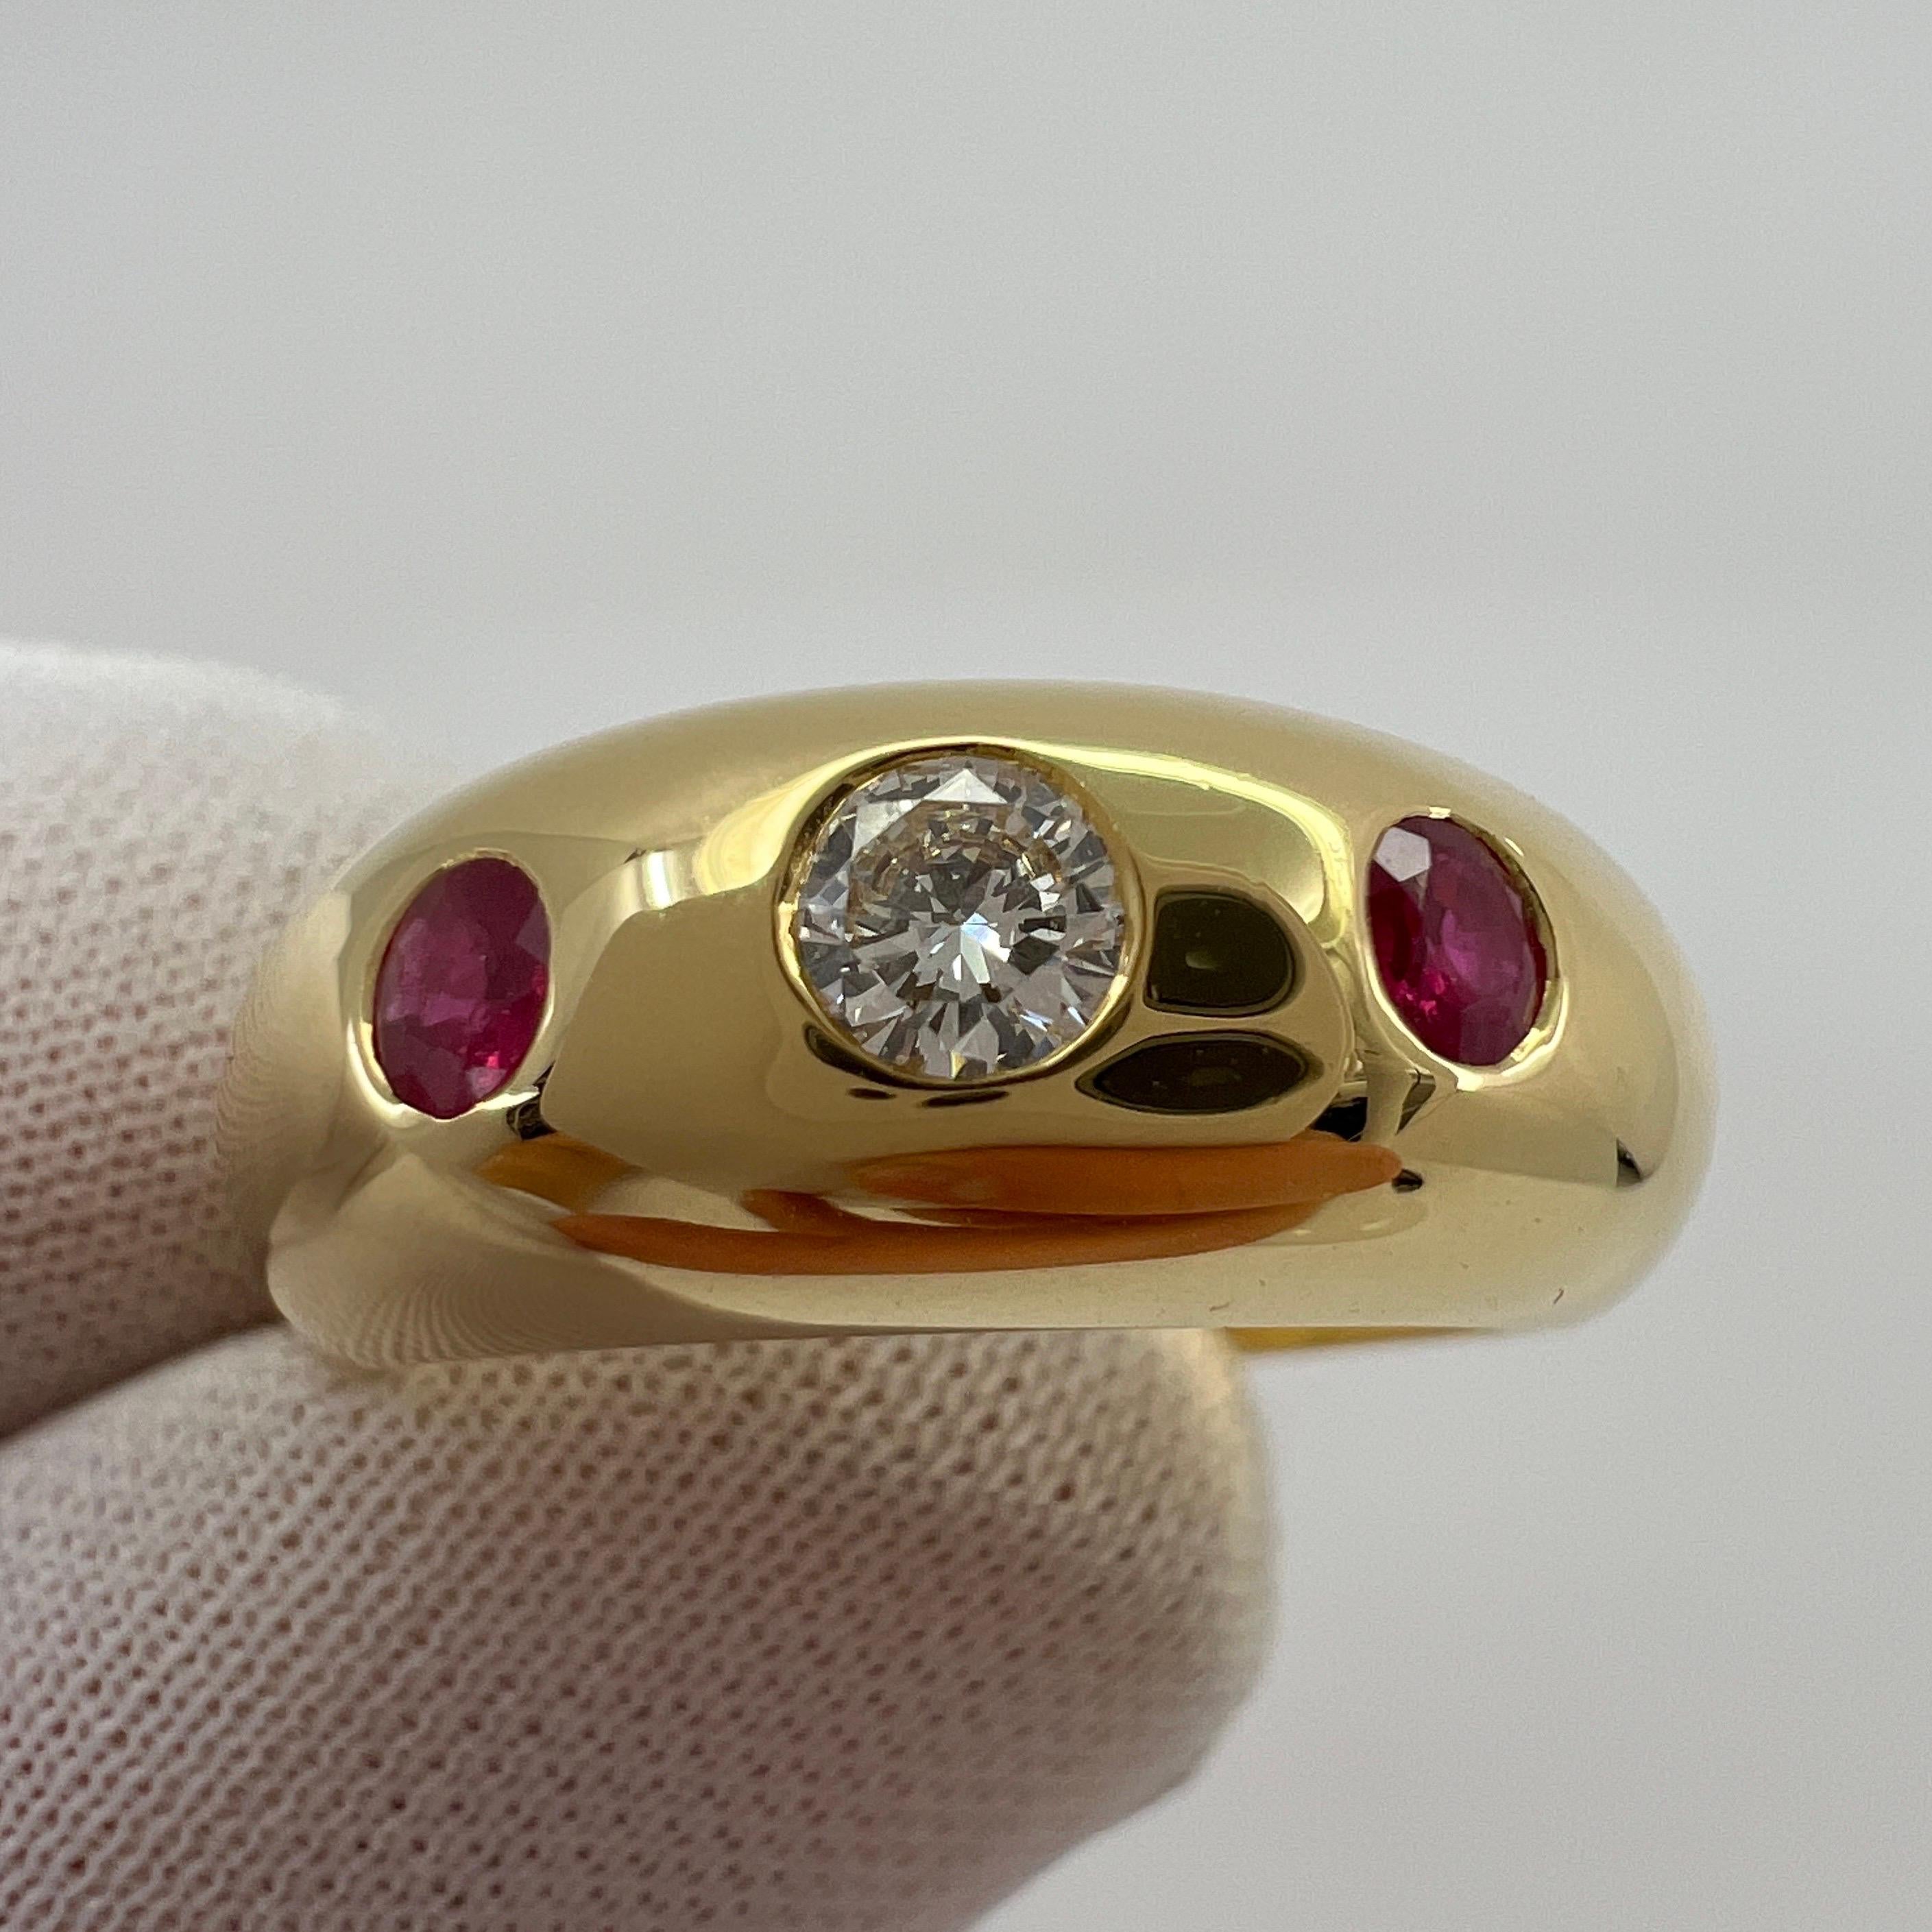 Vintage Cartier Diamond & Ruby 18k Yellow Gold Three Stone Daphne Ring.

Superbe bague Cartier en or jaune sertie d'un magnifique diamant central de 3,5 mm de couleur F/G et de pureté VVS. Le tout est rehaussé par deux rubis d'un rouge profond